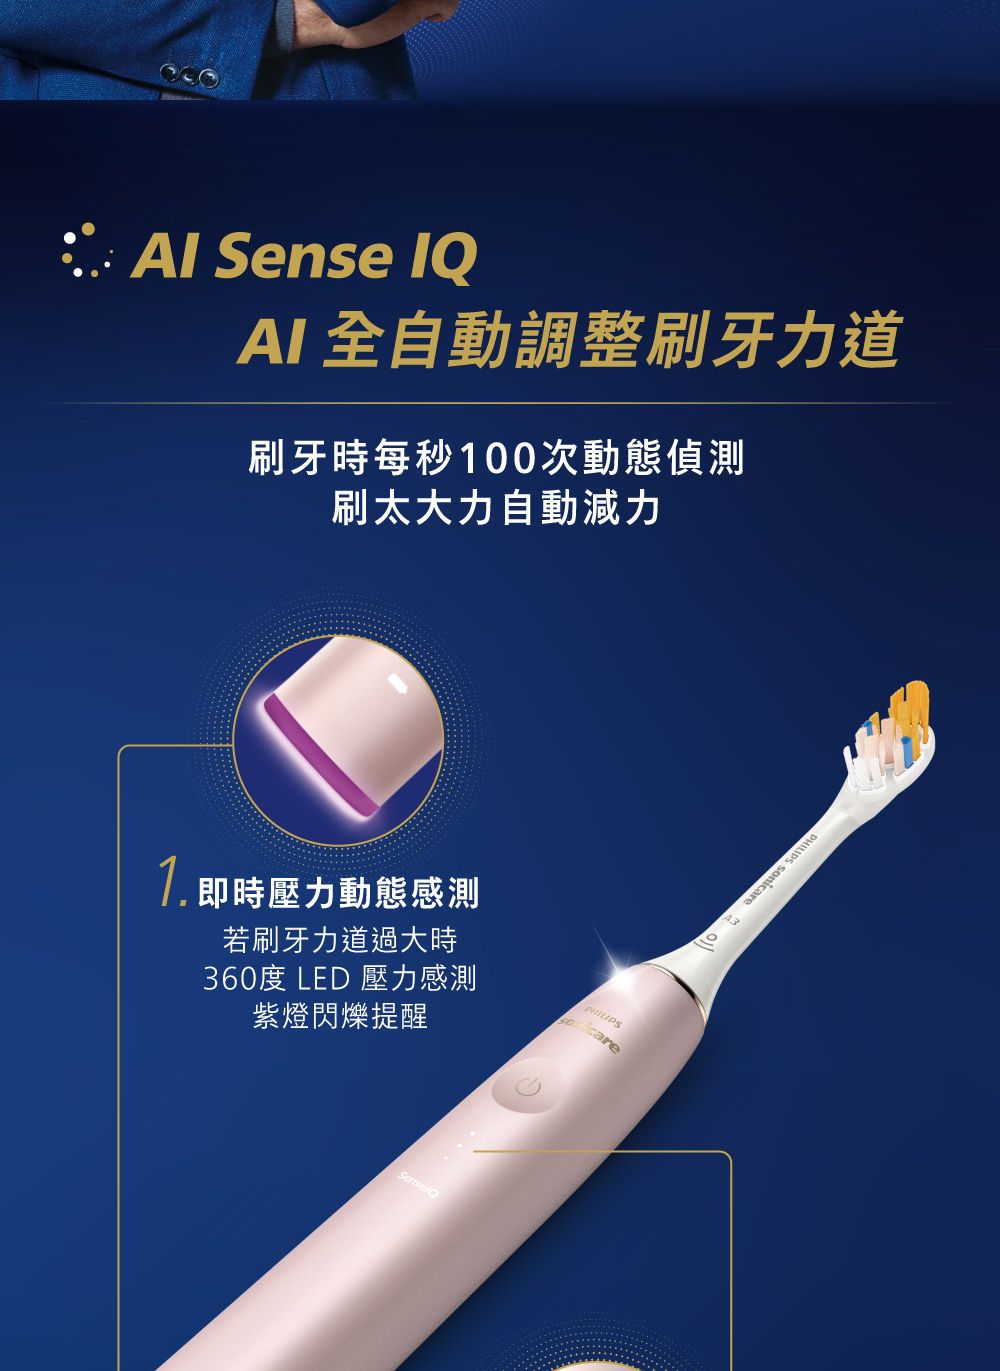 Sense AI全自動調整刷牙力道刷牙時每秒100次動態偵測刷太大力自動減力 即時壓力動態感測若刷牙力道過大時360度 LED 壓力感測紫燈閃爍提醒